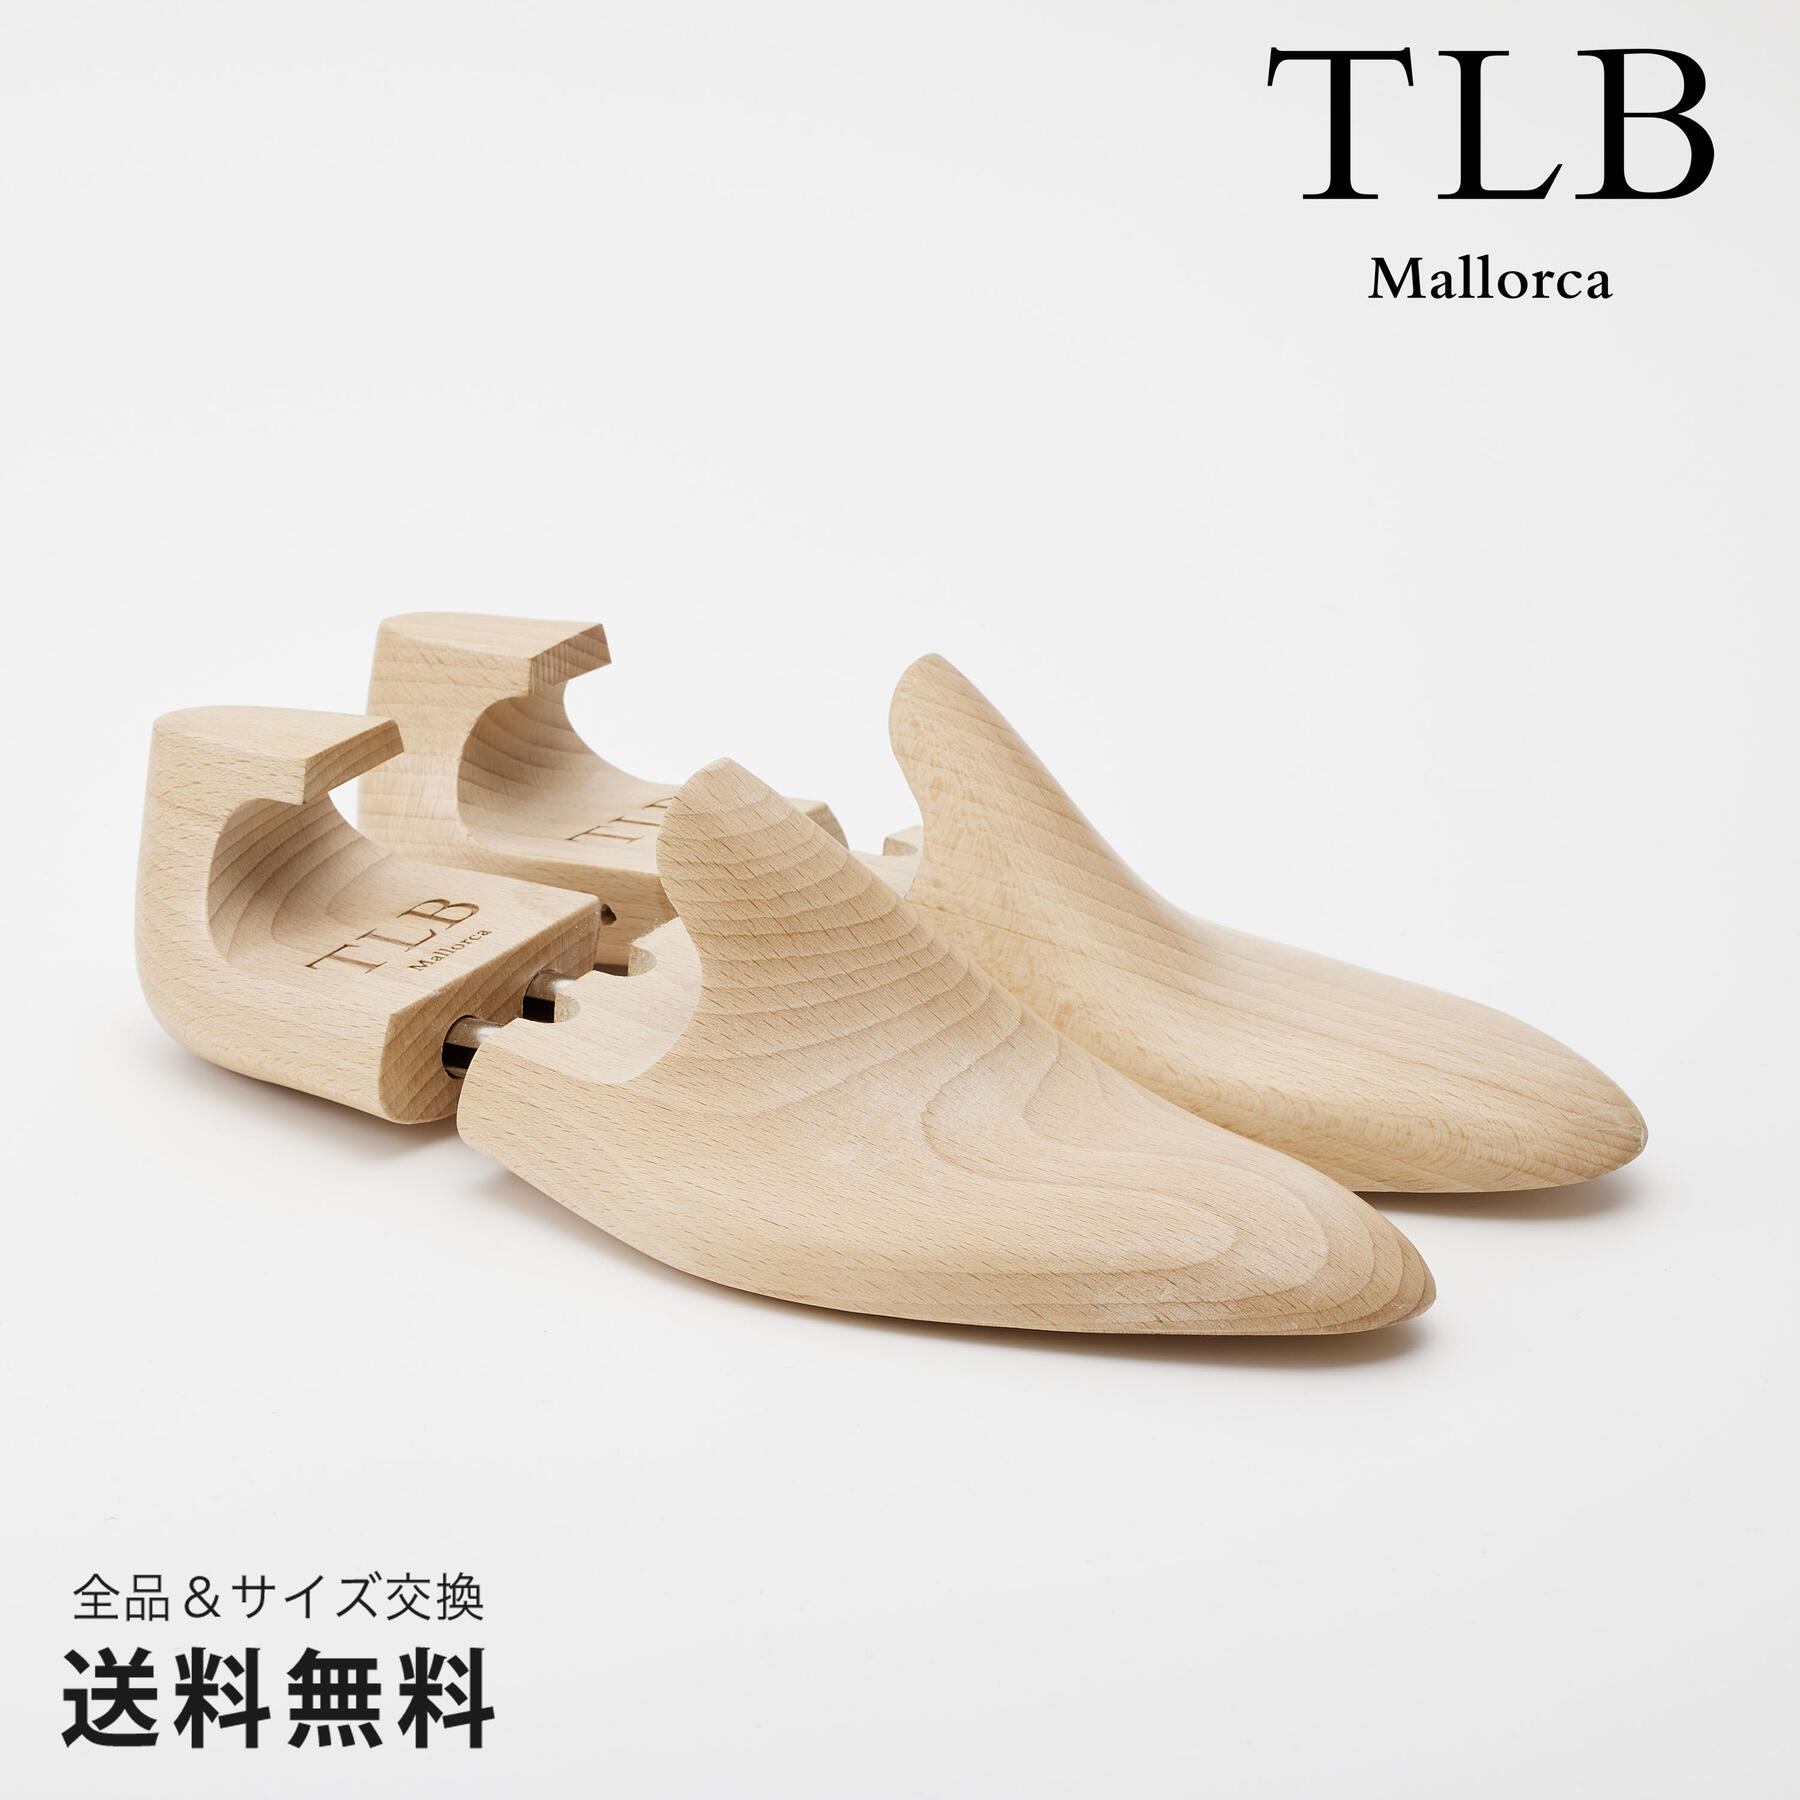 【公式】TLB Mallorca ティーエルビー シューキーパー シューツリー 小物 GOYA シダーウッド TLB004 スペイン 靴 メンズ靴 シューキーパー サイズ 24.0 - 26.0cm【あす楽】